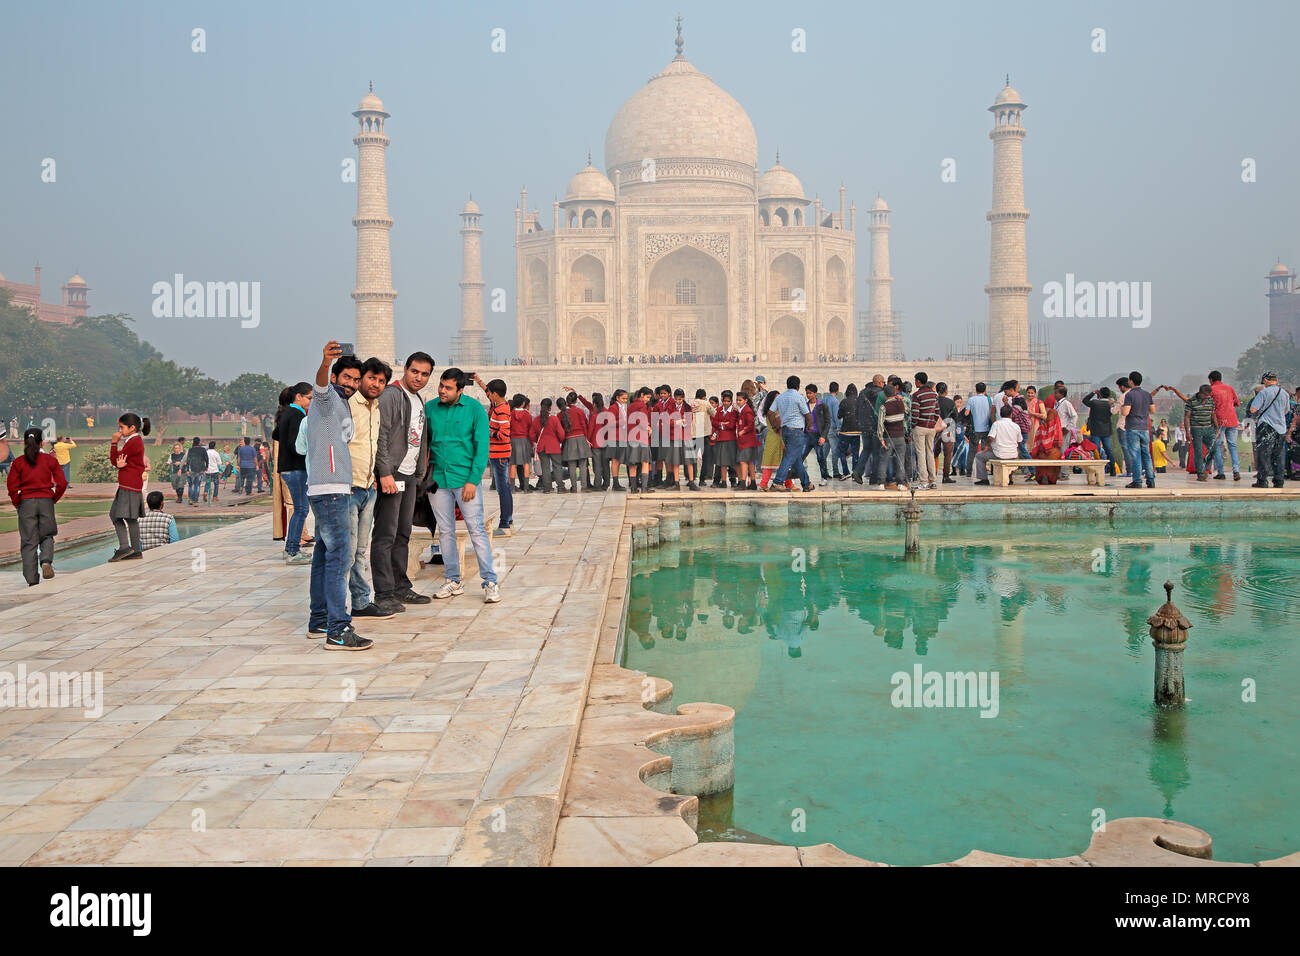 Agra, Indien - November 29, 2015: Berühmte Taj Mahal mit Touristen, im großen mausoleum aus weißem Marmor gebaut von der Großmogul Shah Jahan Stockfoto